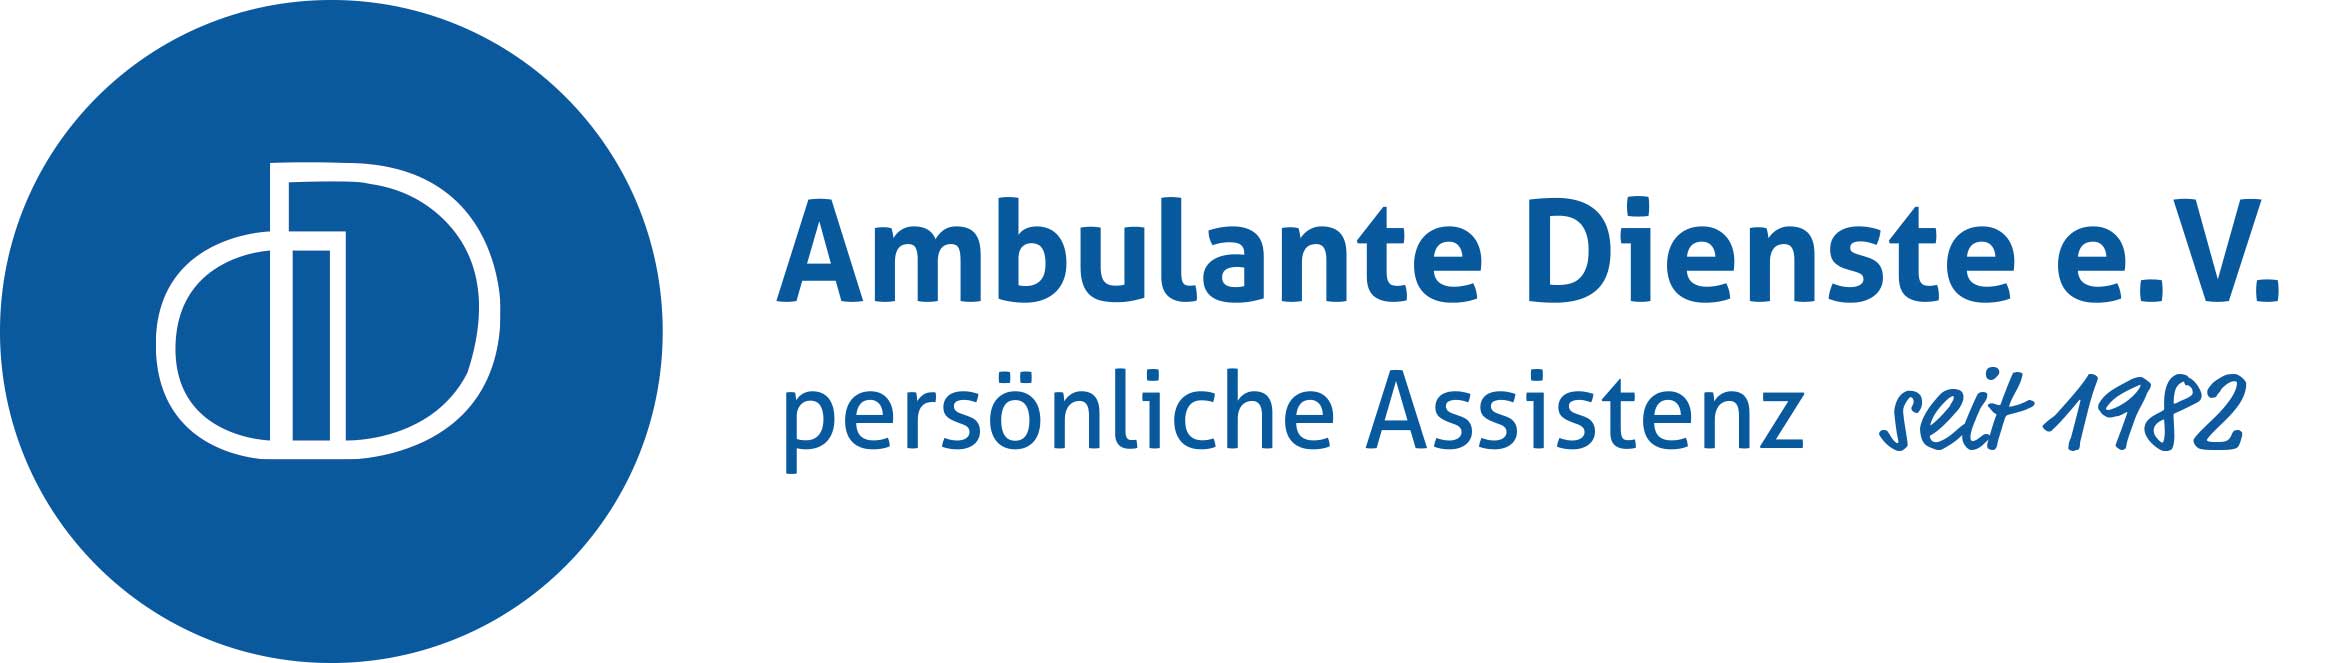 Ambulante-Dienste-eV-Muenster Logo des ambulanten Dienste e.v., der seit 1982 den Schwerpunkt auf persönliche Assistenzdienste legt.